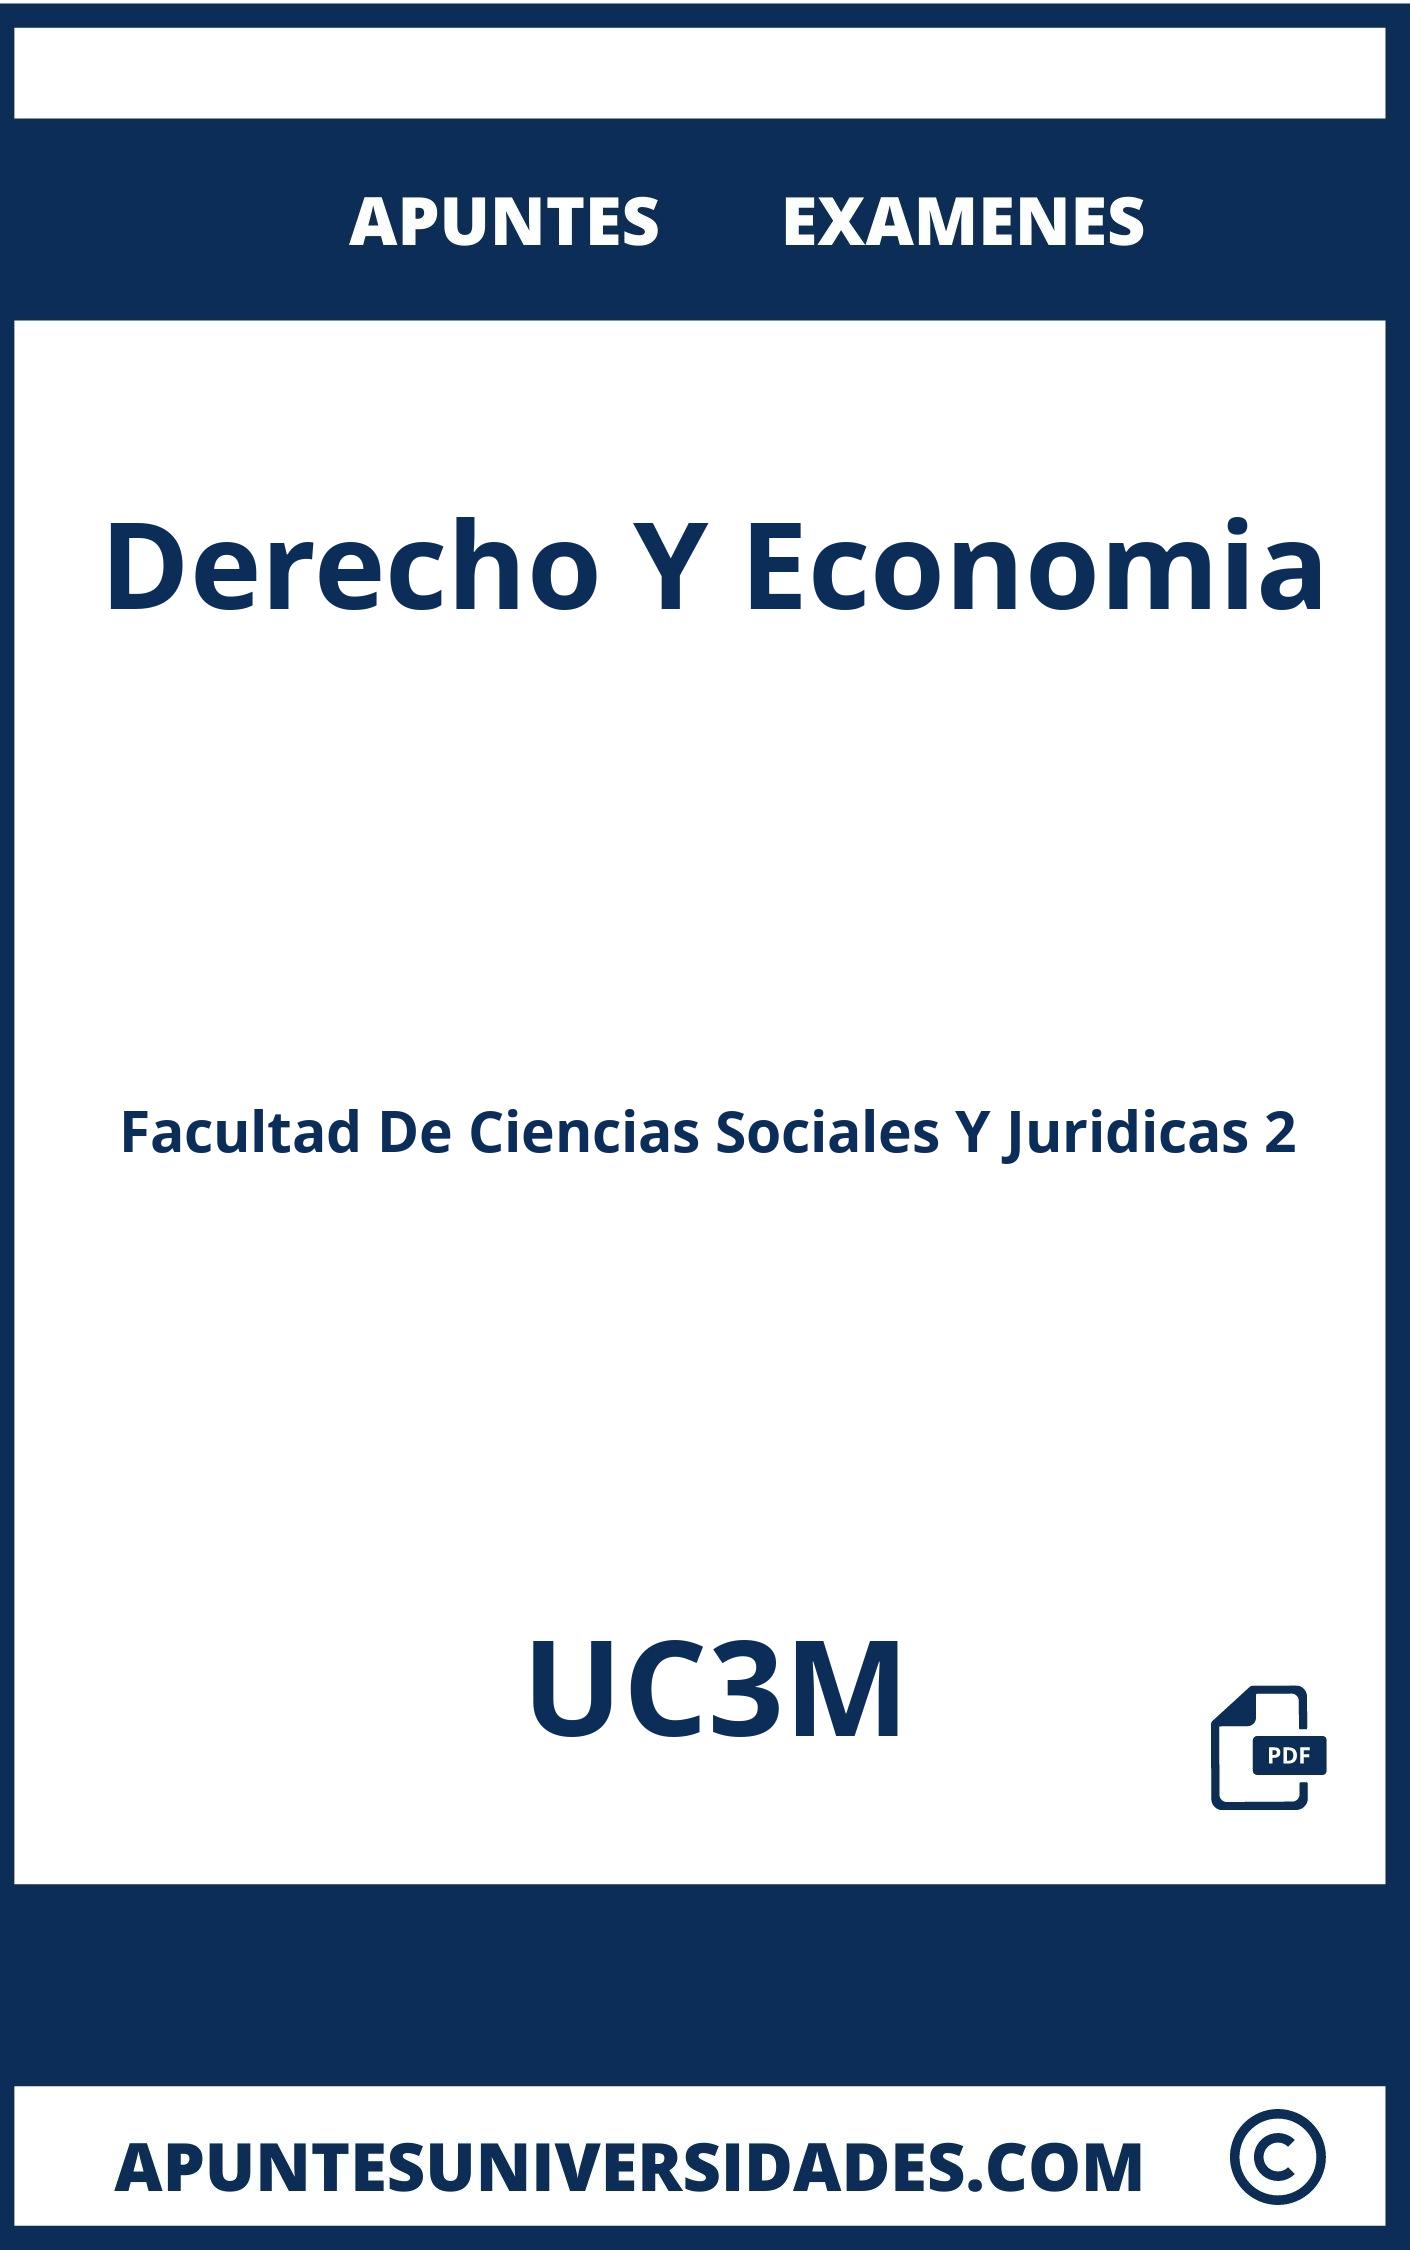 Apuntes y Examenes Derecho Y Economia UC3M